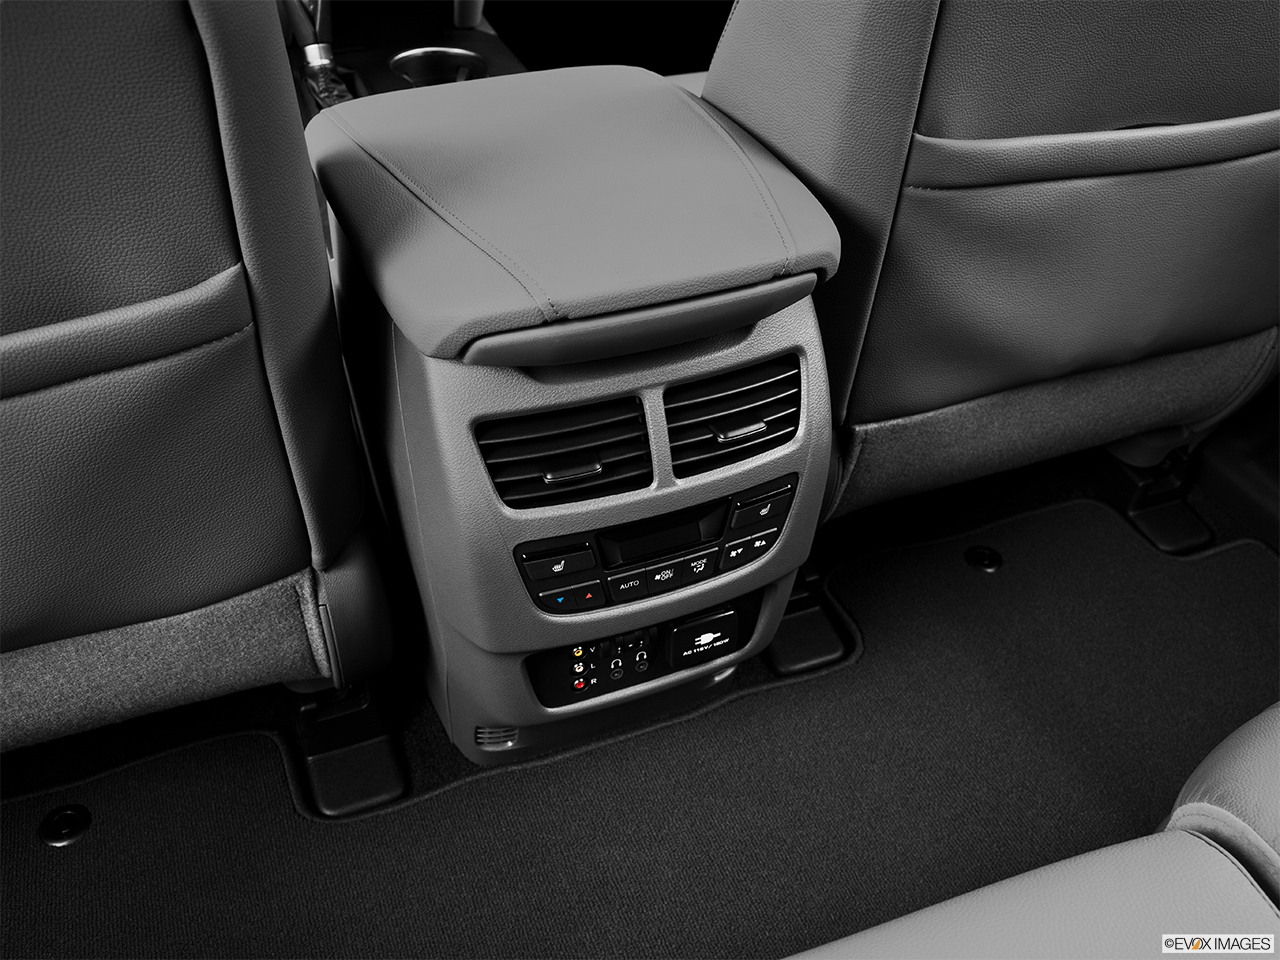 2014 Acura MDX SH-AWD Rear A/C controls. 